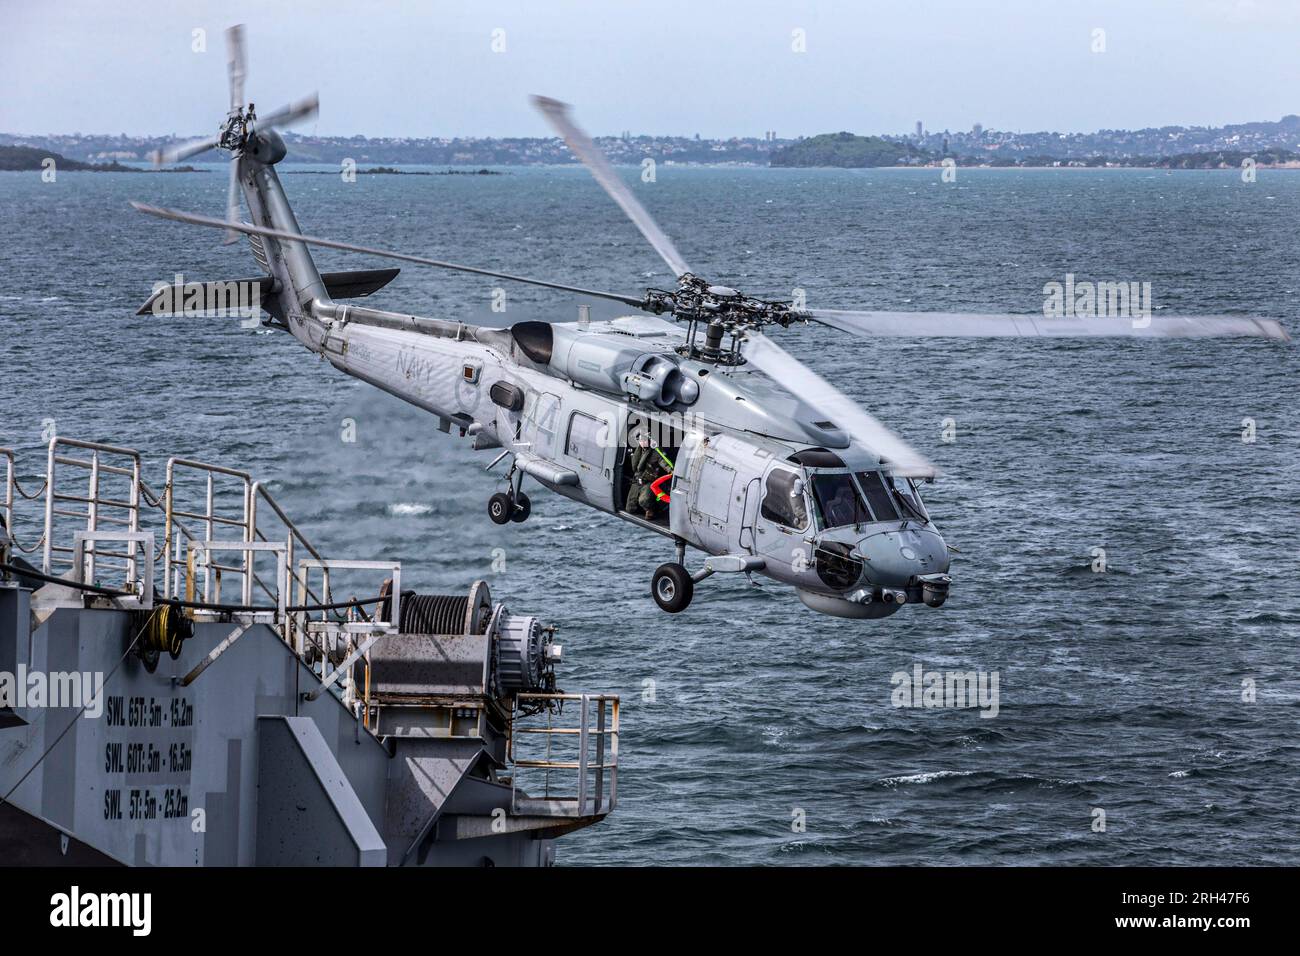 Un hélicoptère australien Sea Hawk se prépare à atterrir à bord du HMNZS Canterbury tout en participant à un exercice maritime international dans le Hauraki Gu Banque D'Images